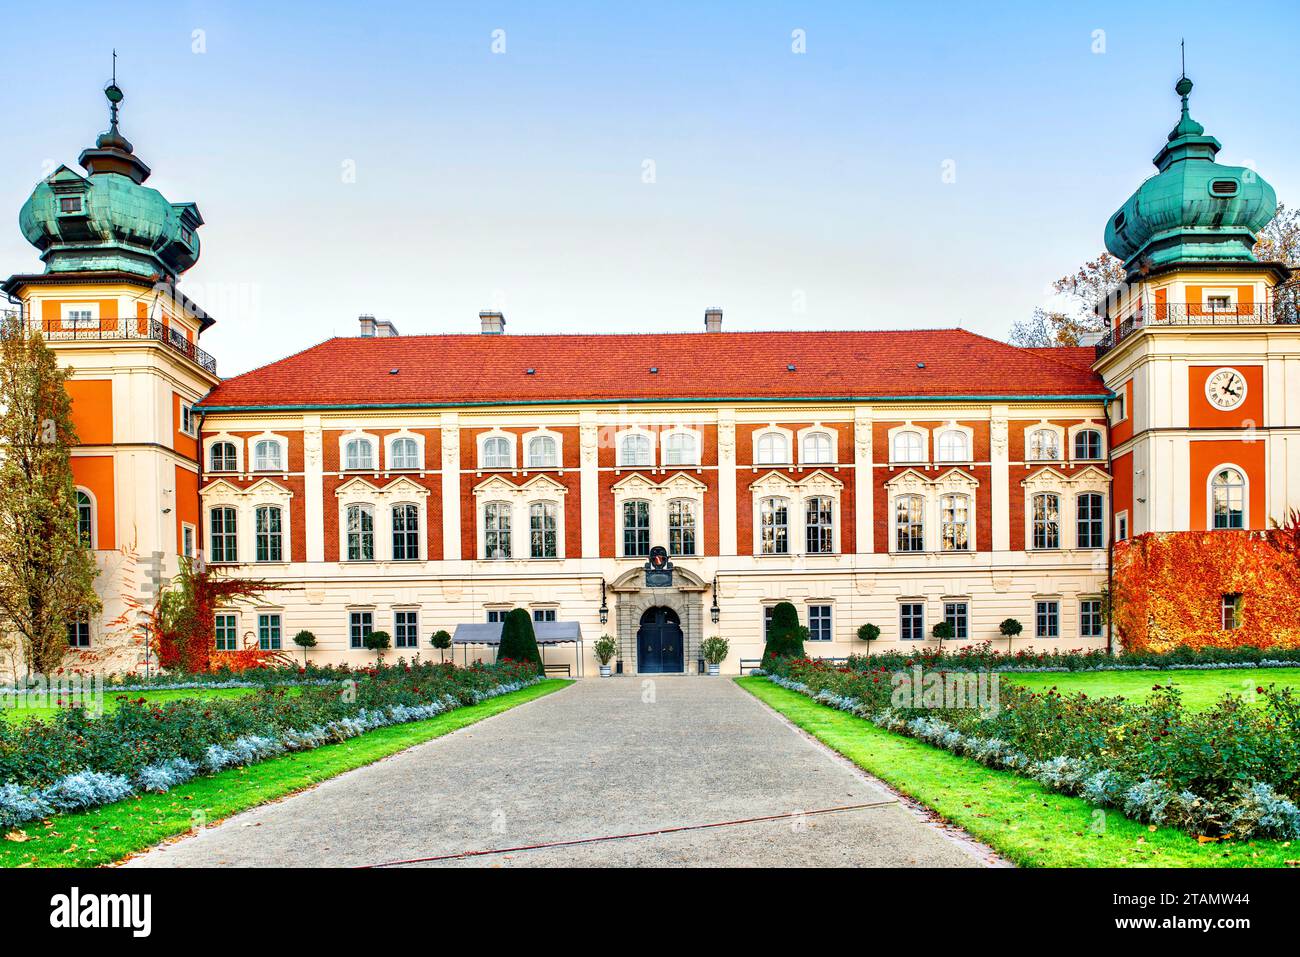 Das Schloss Lubomirski in Lancut ist eines der bedeutendsten Palast- und Parkensembles Polens, eine wahre Schatzkammer der nationalen Geschichte und Kultur. Stockfoto